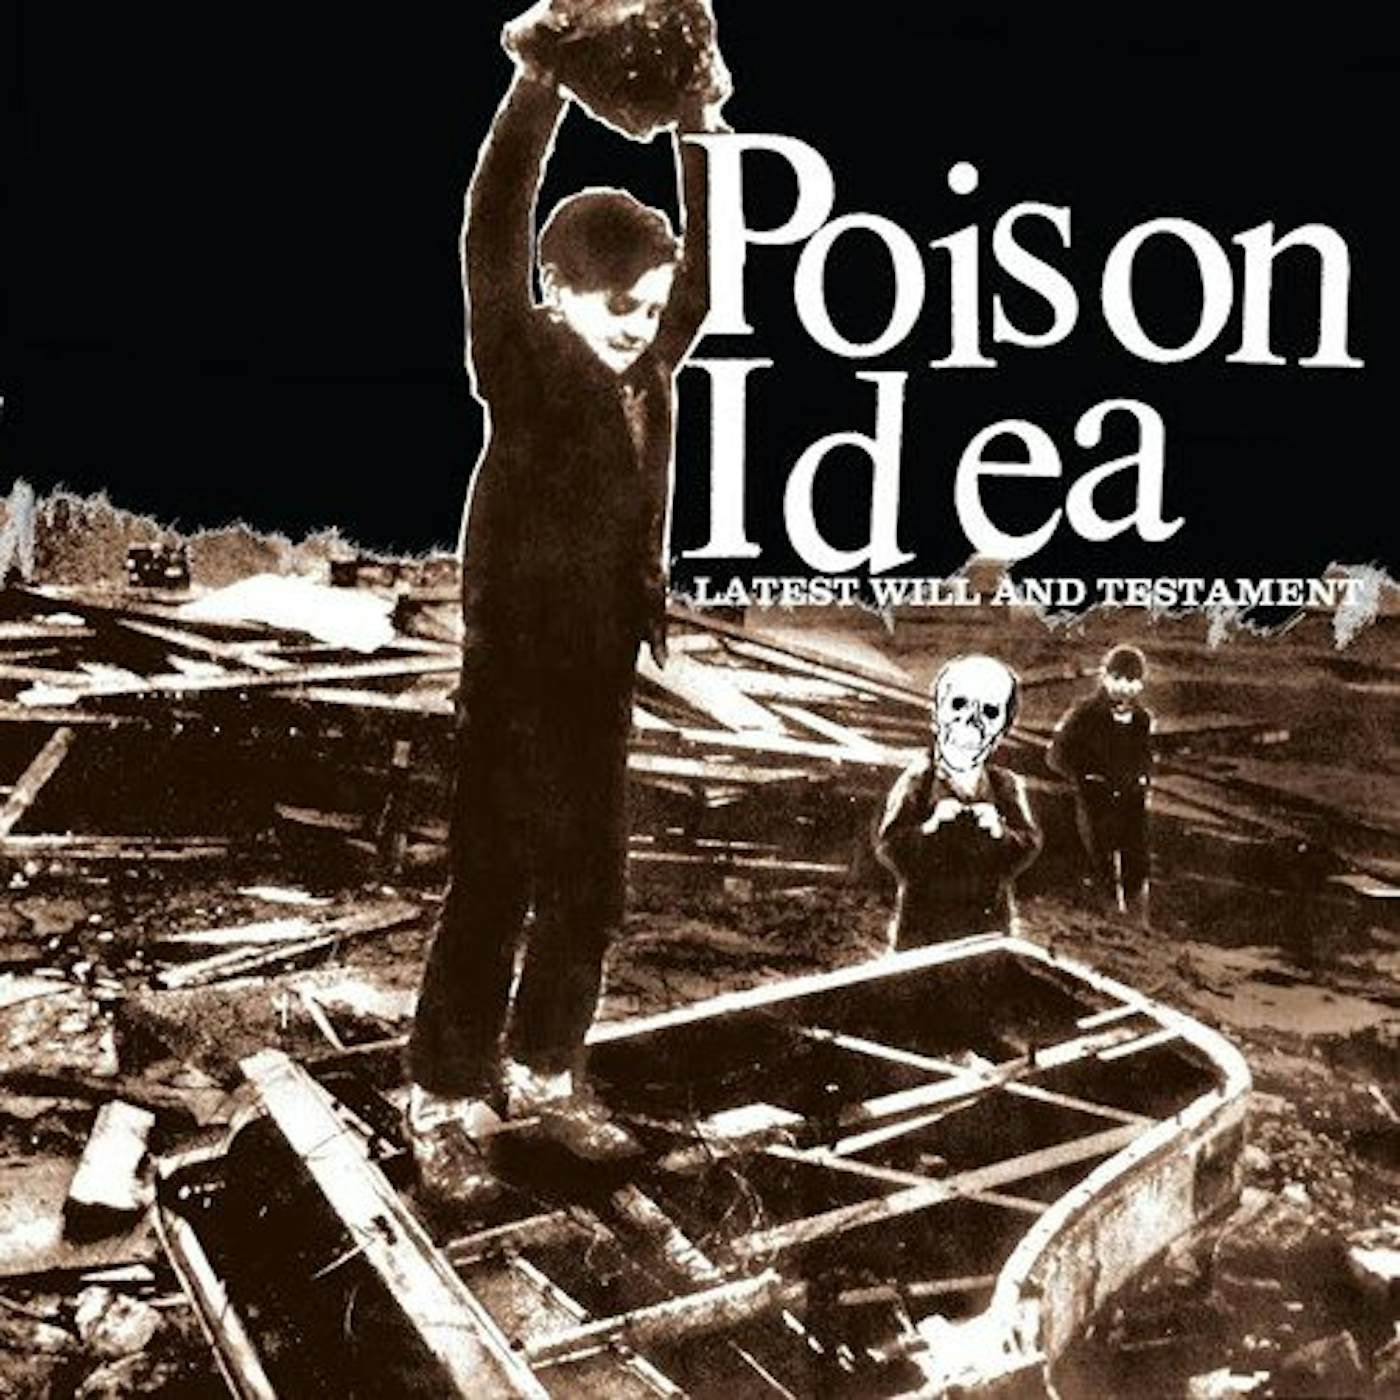 Poison Idea Latest Will & Testament Vinyl Record